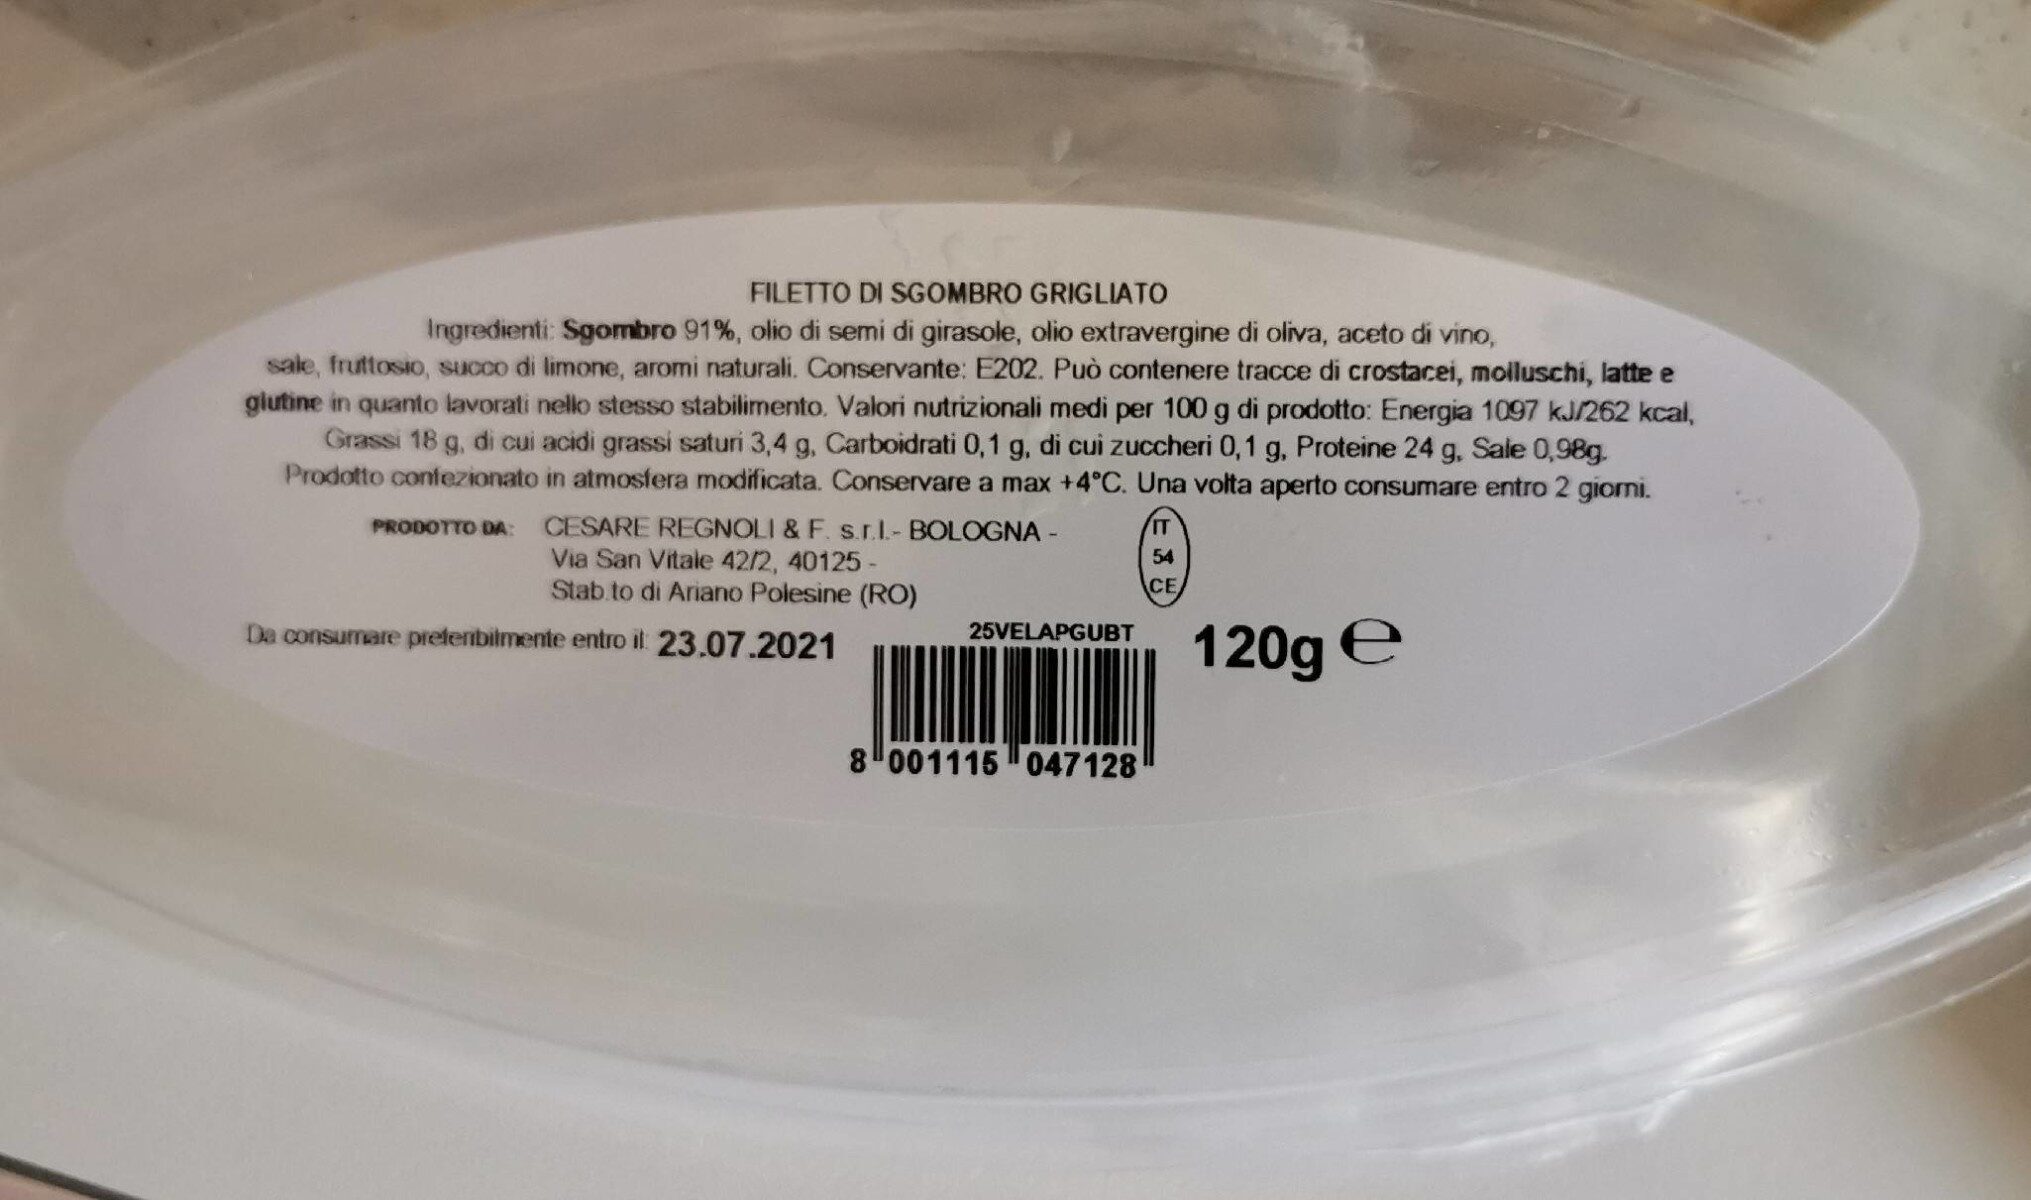 Filetti di Sgombro grigliato - Product - it